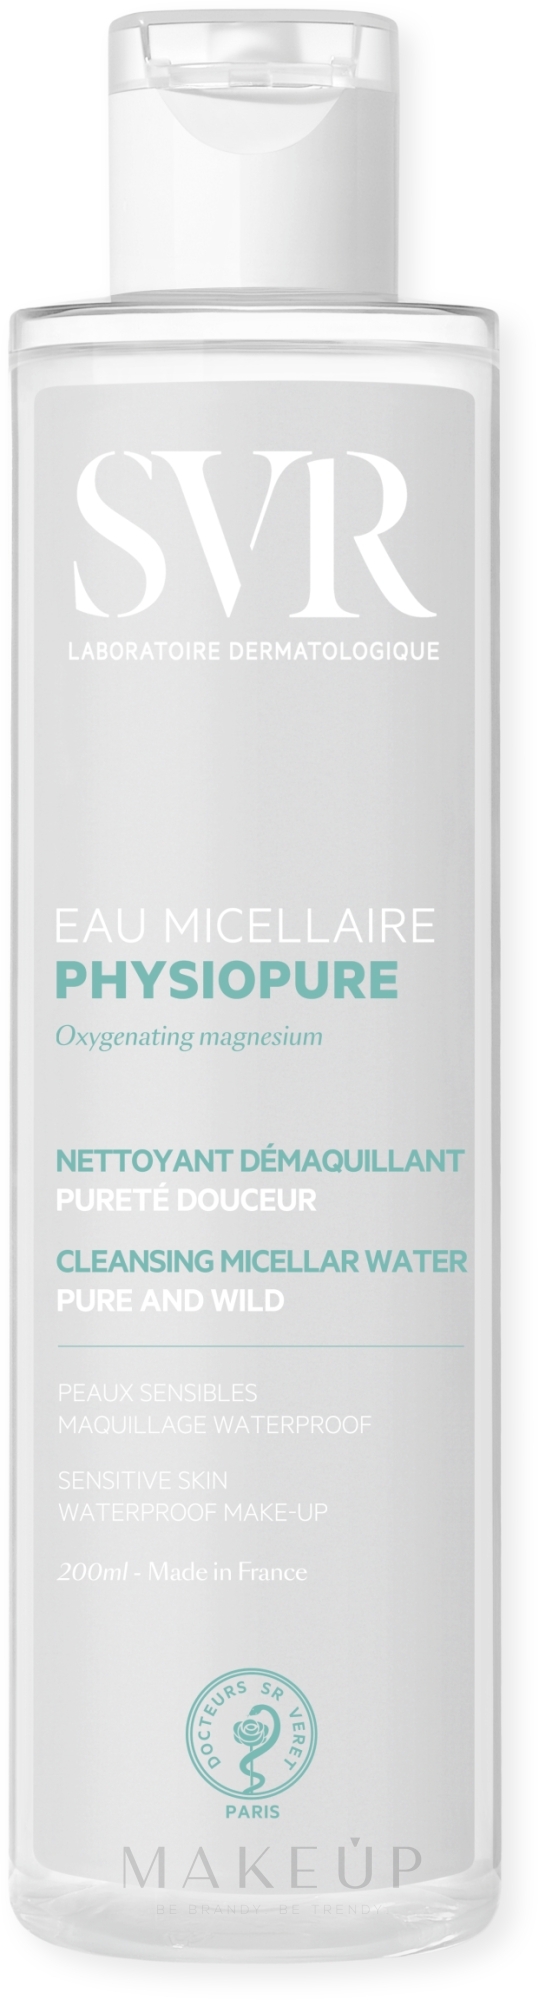 Reinigendes Mizellenwasser für wasserfestes Make-up - SVR Physiopure Eau Micellaire — Foto 200 ml